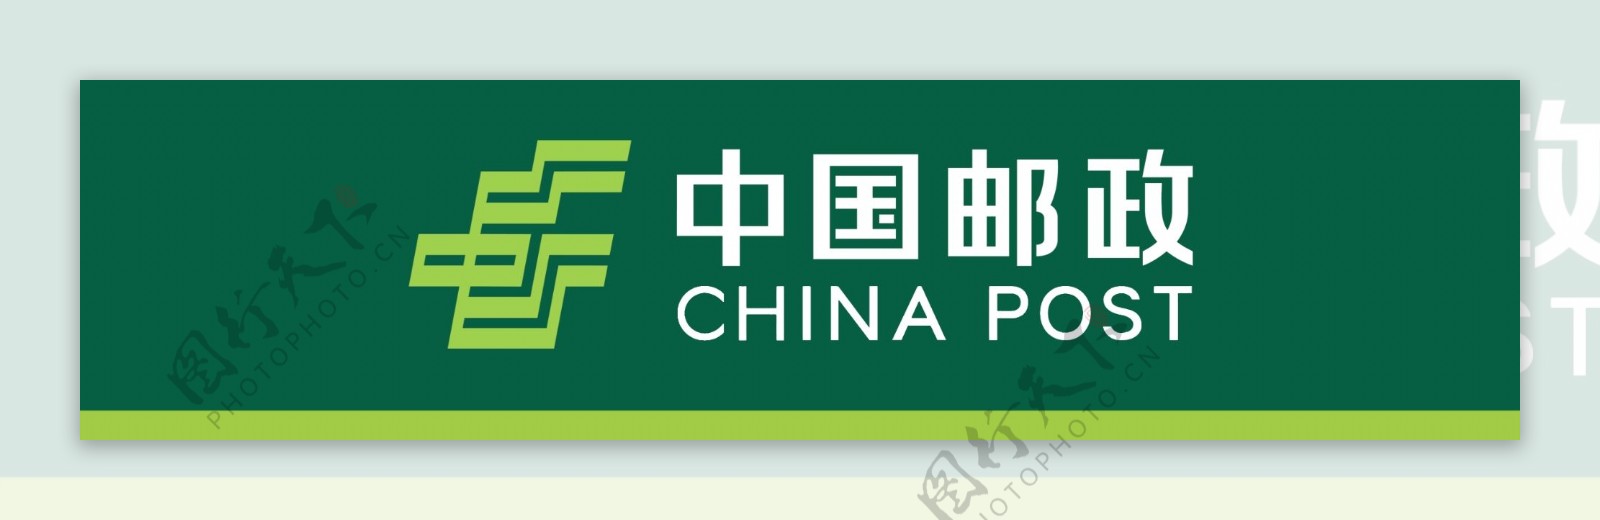 中国邮政标识2020图片